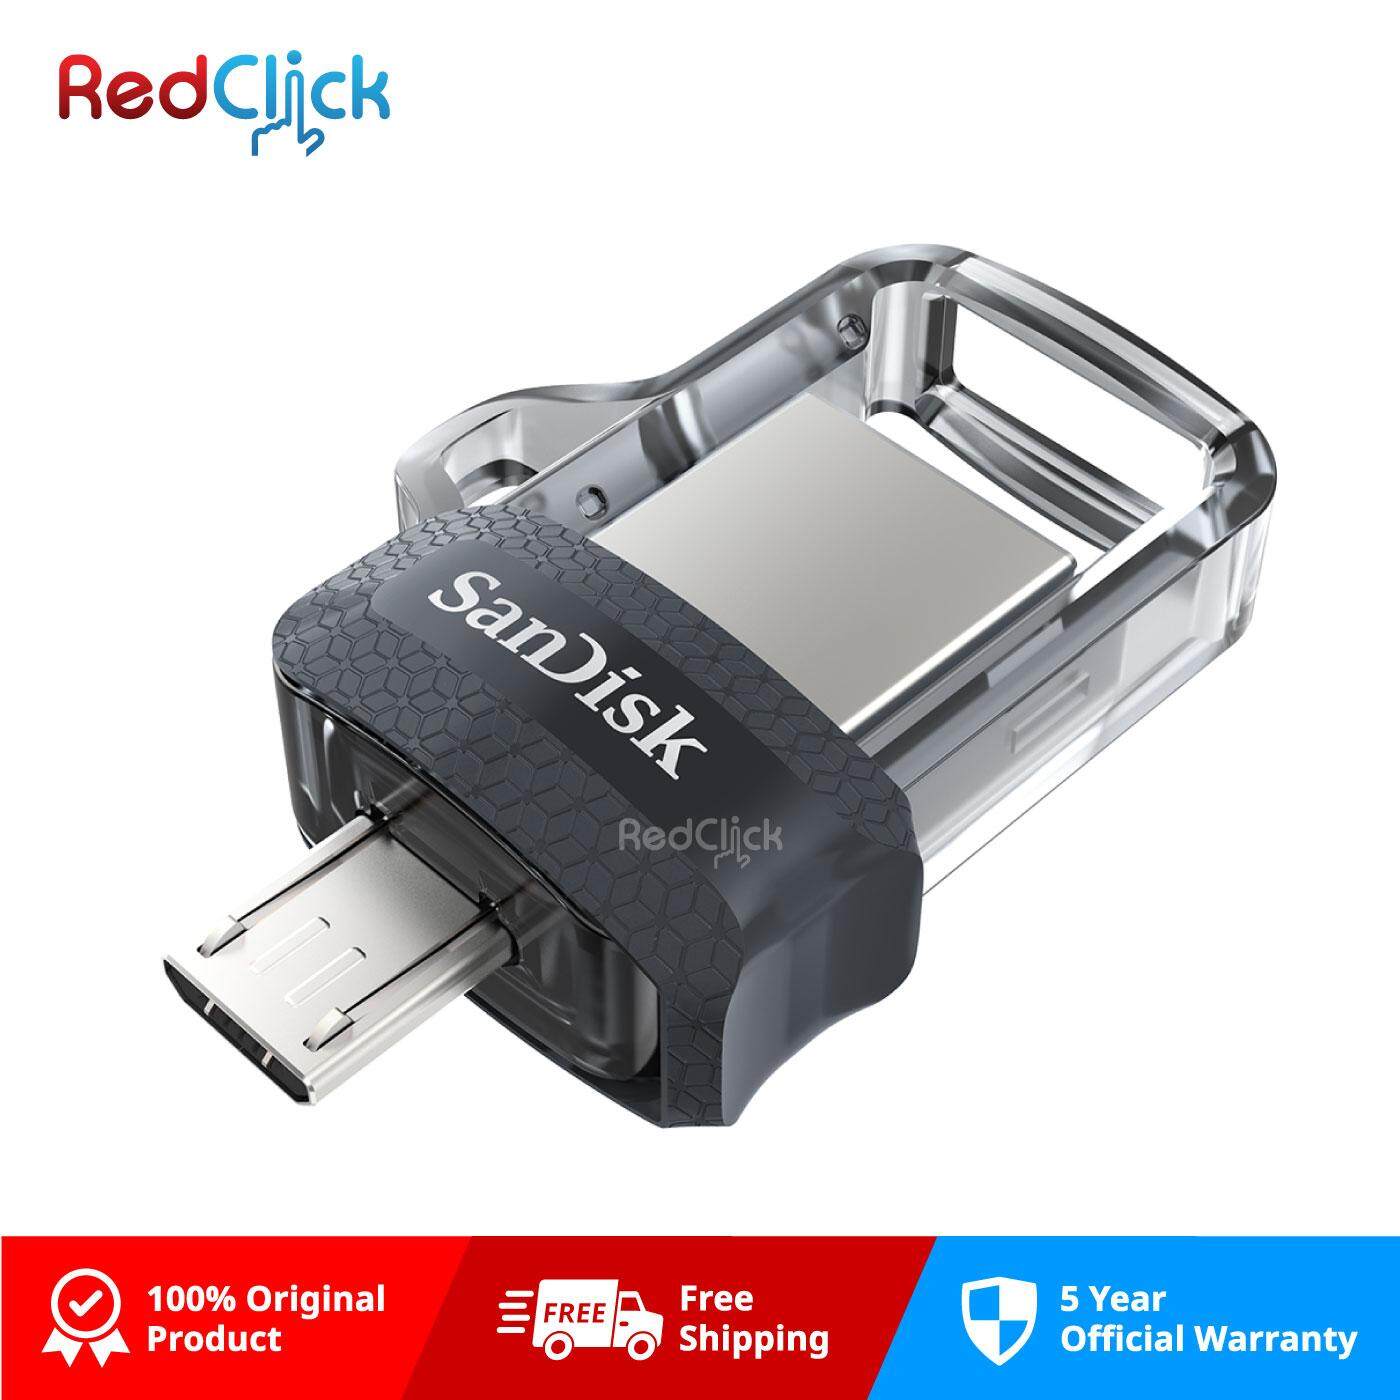 Sandisk Original 16GB/ 32GB/ 64GB/ 128GB/ 256GB Ultra Dual Drive USB 3.0 Micro OTG Flash Drive